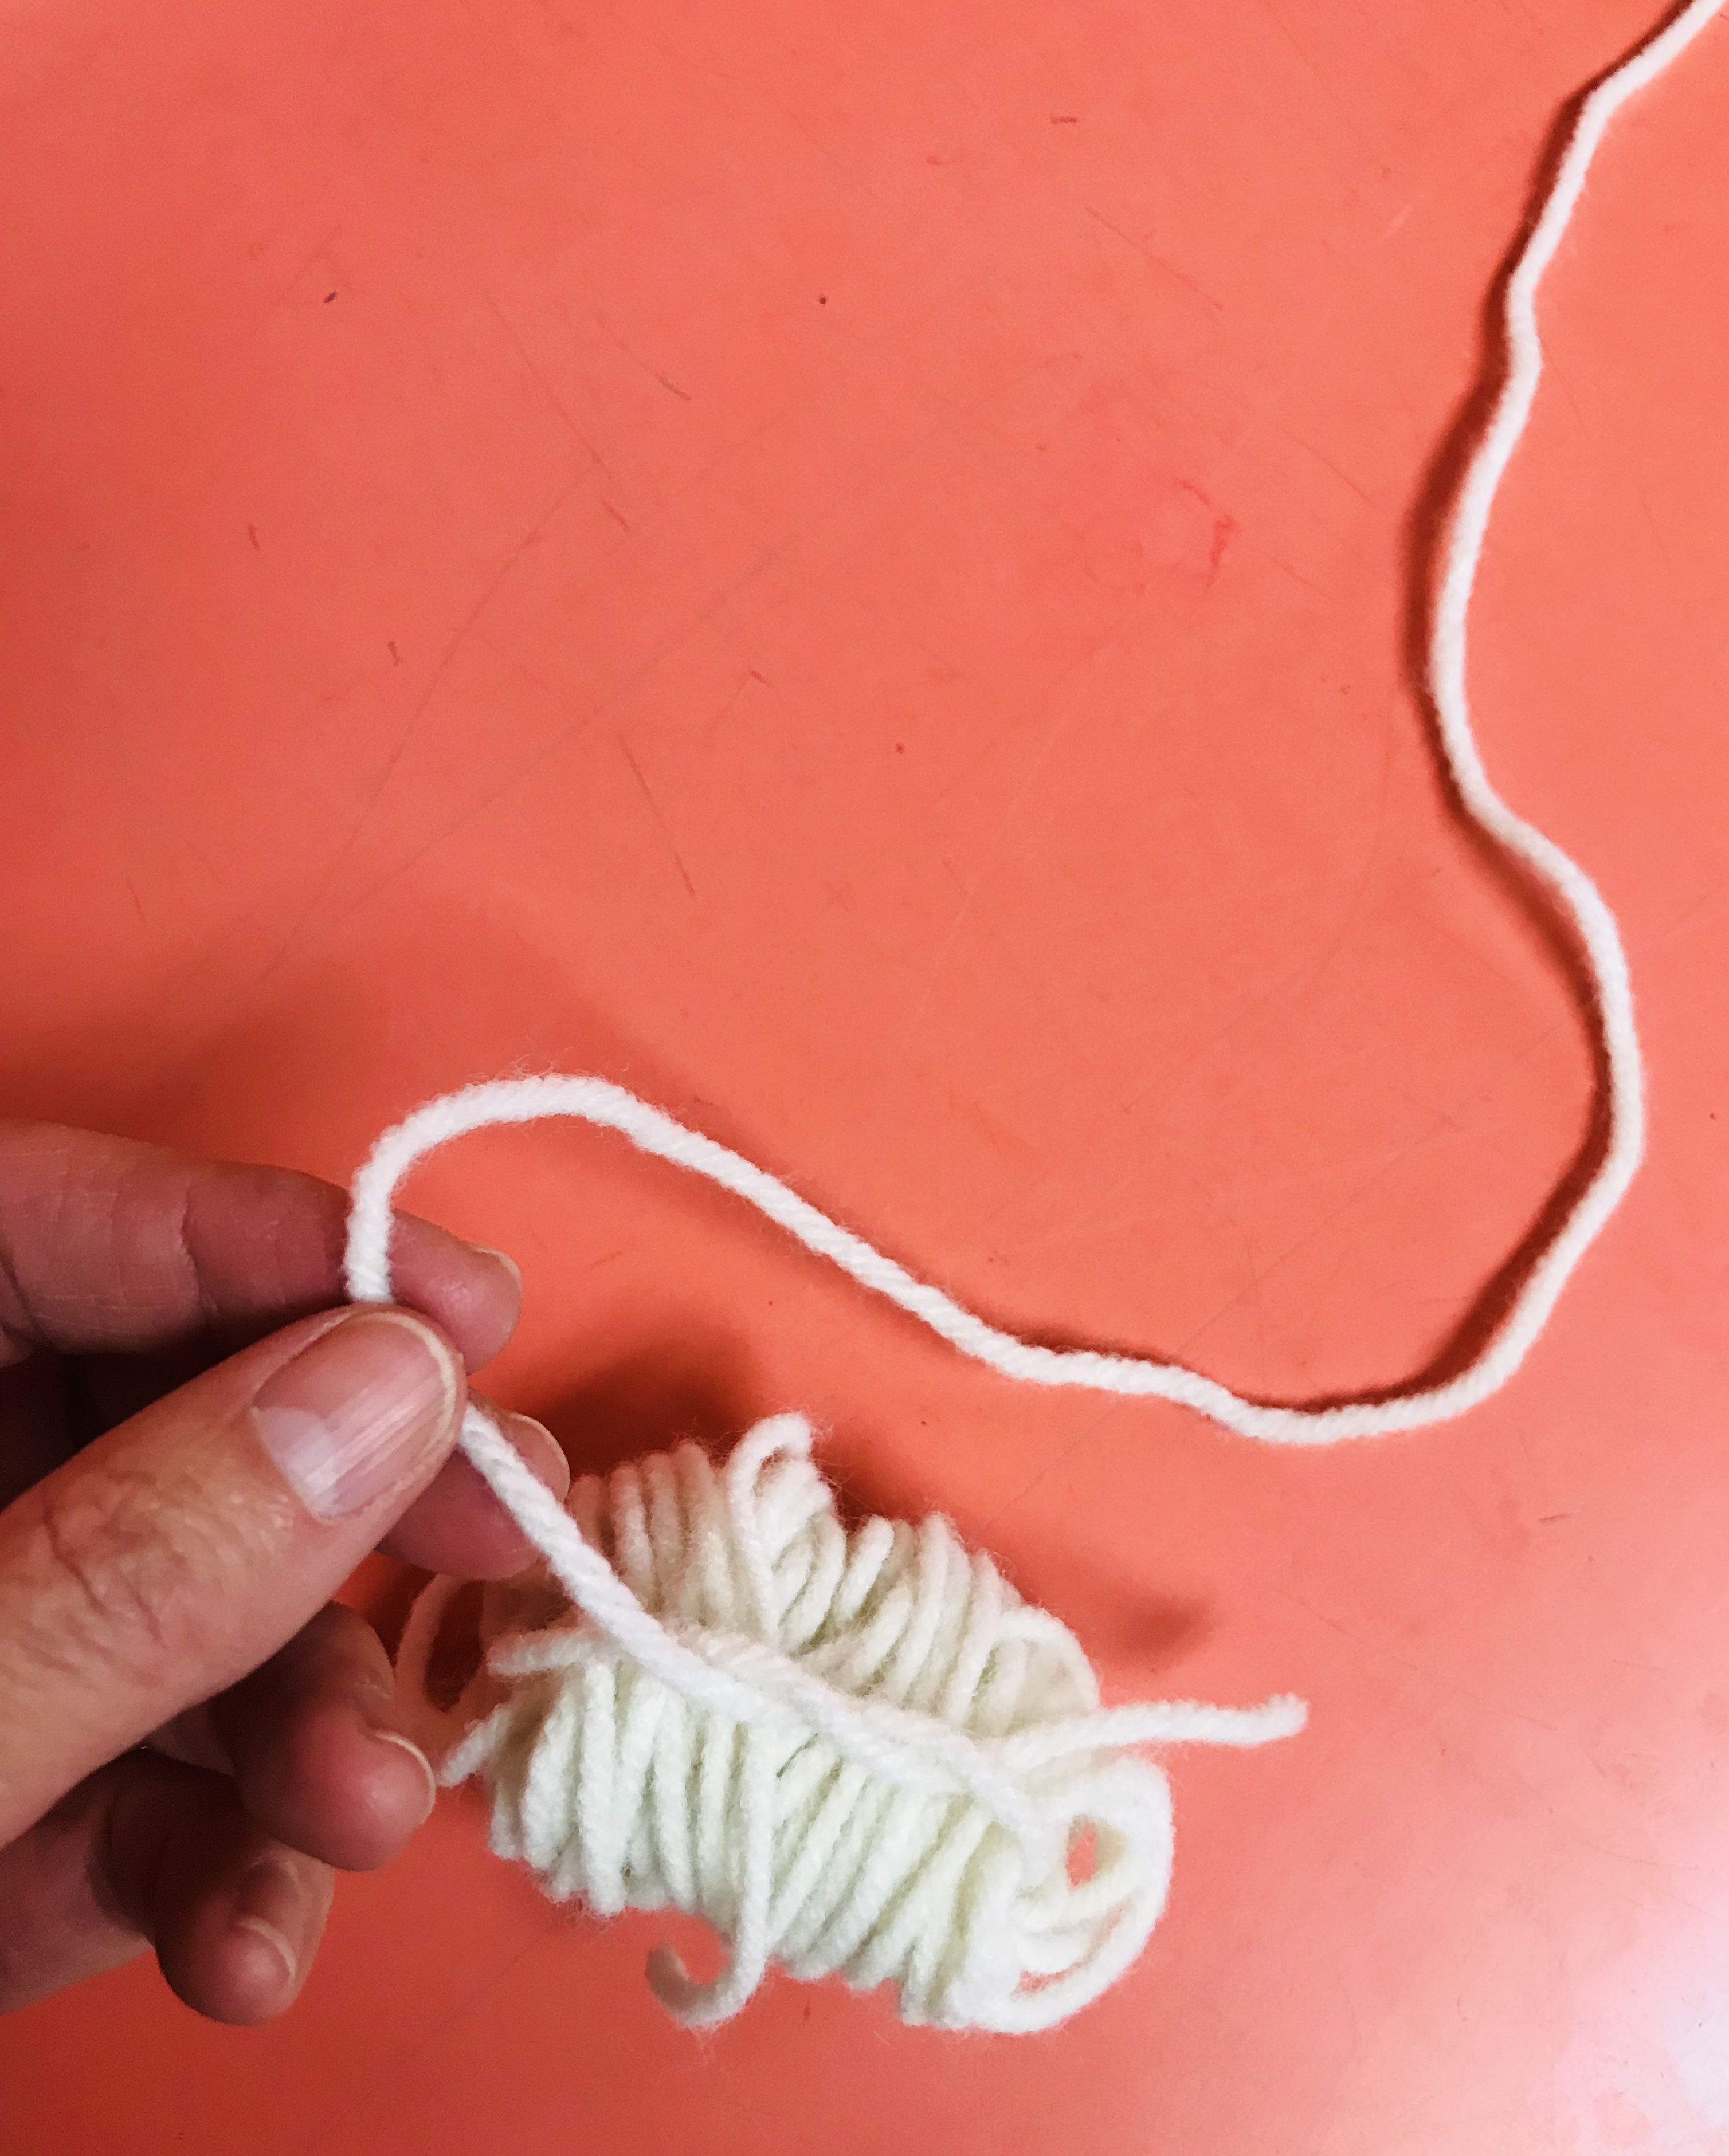 Tying yarn ball with string